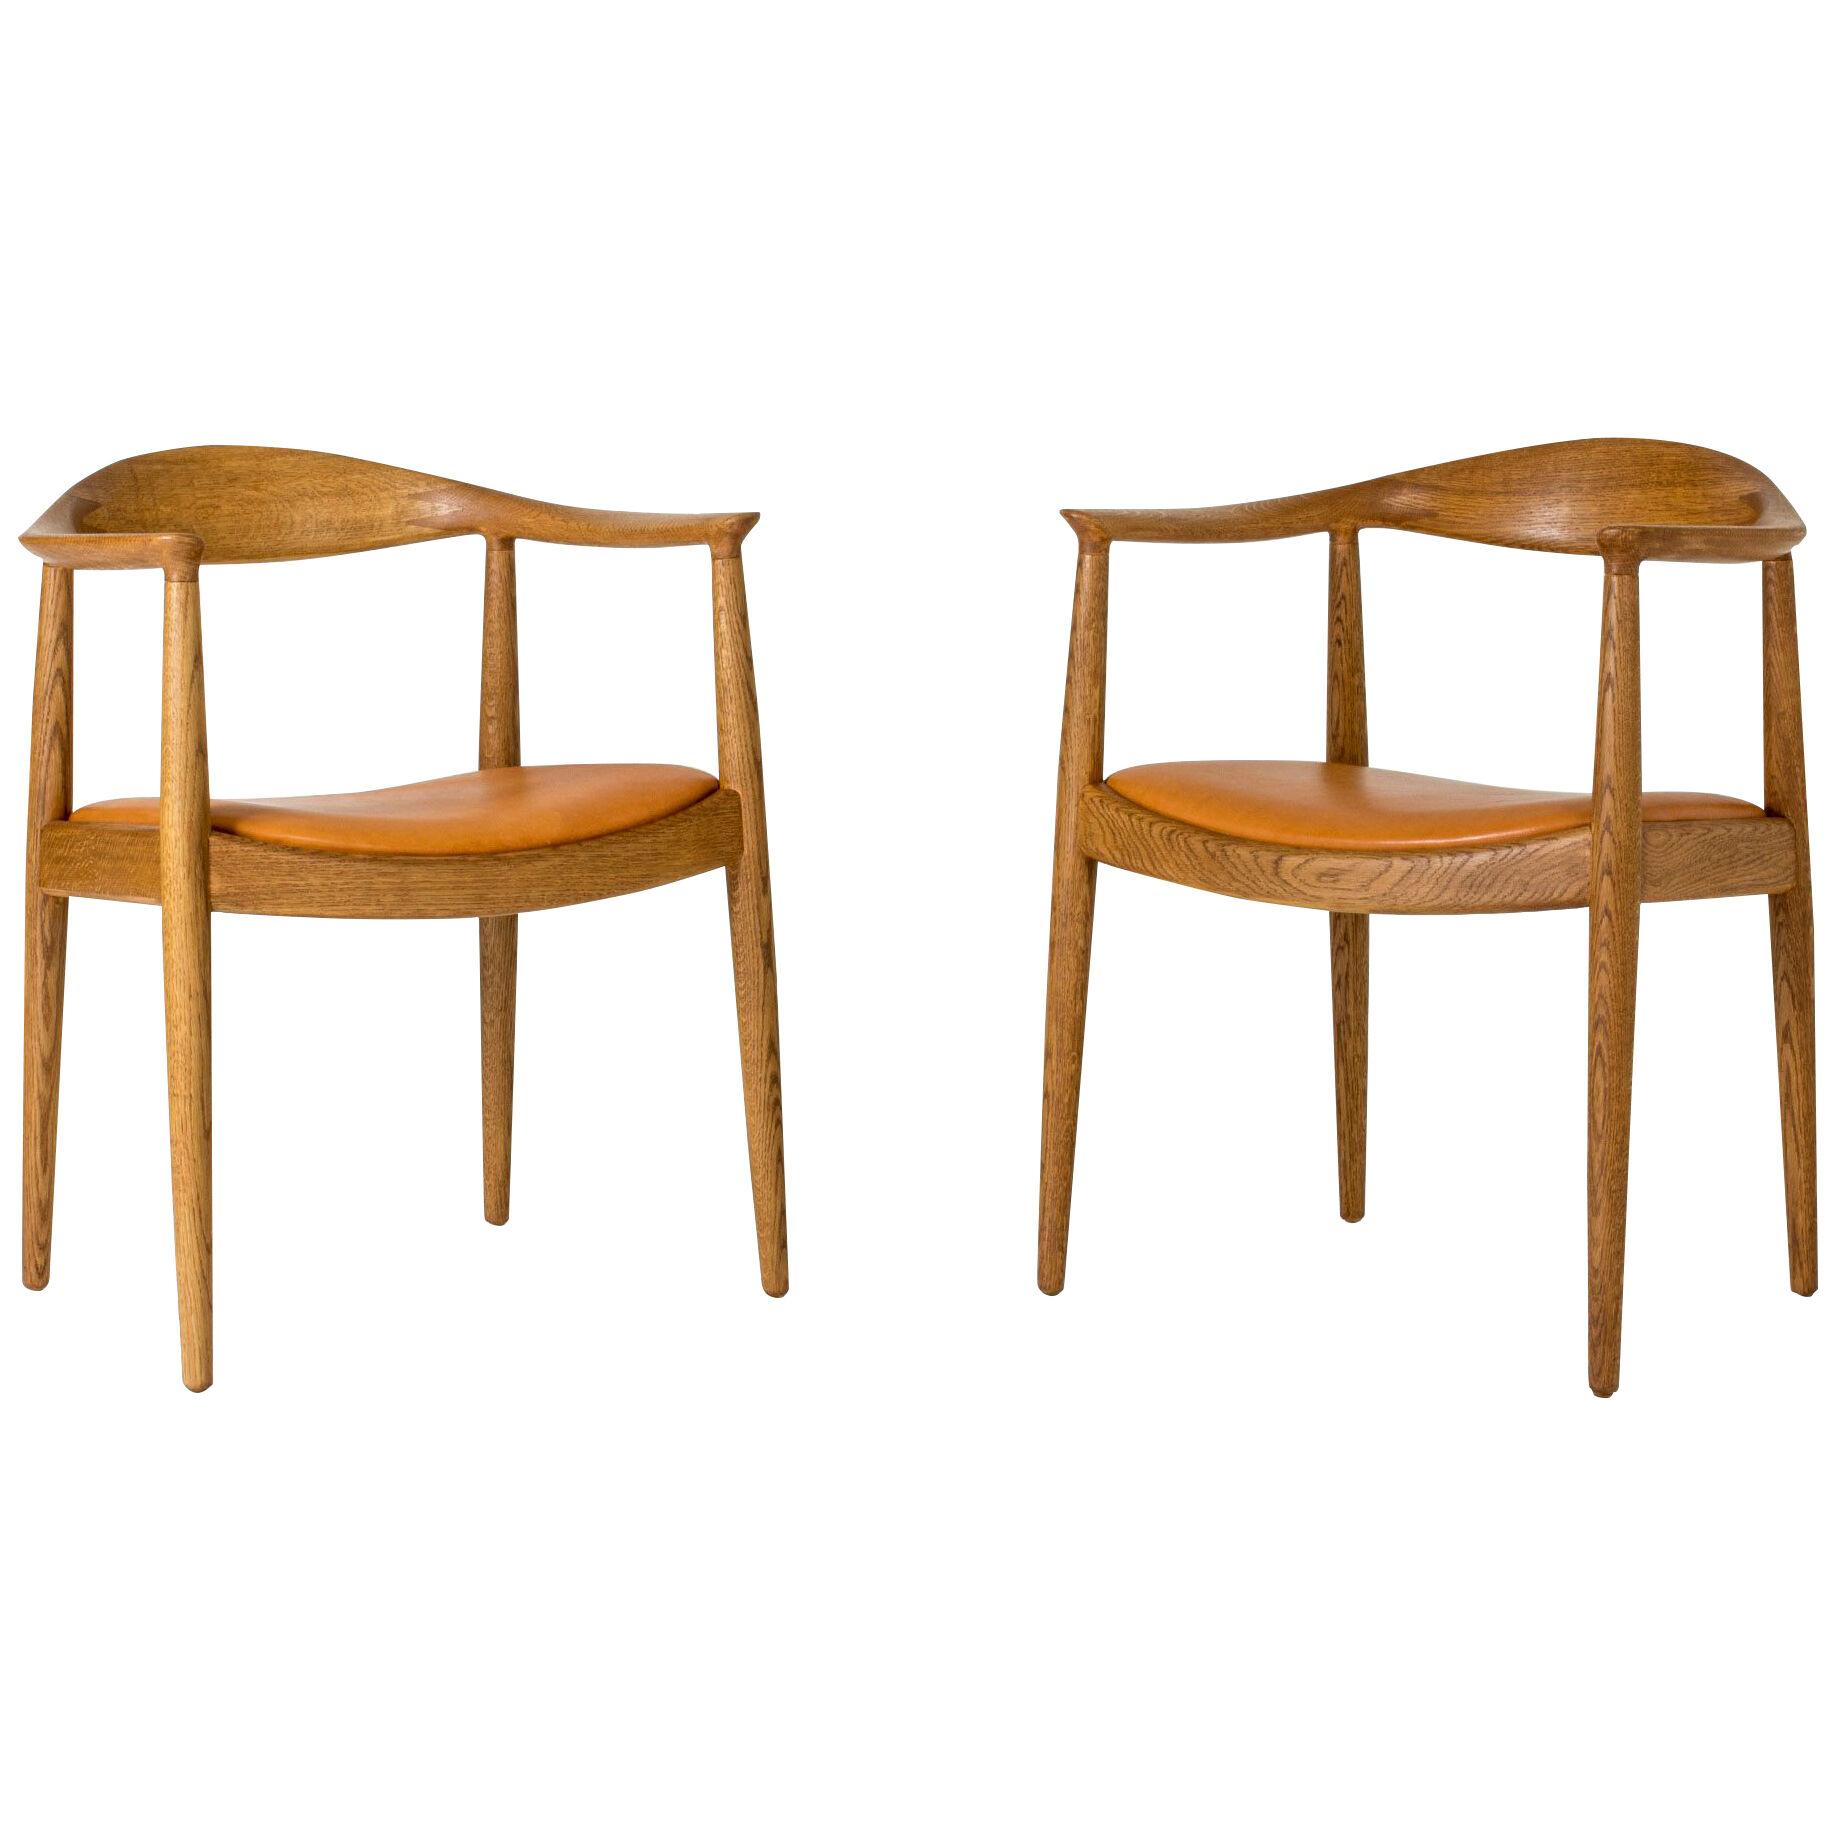 Pair of "The Chair" armchairs by Hans J. Wegner for Johannes Hansen, Denmark. 